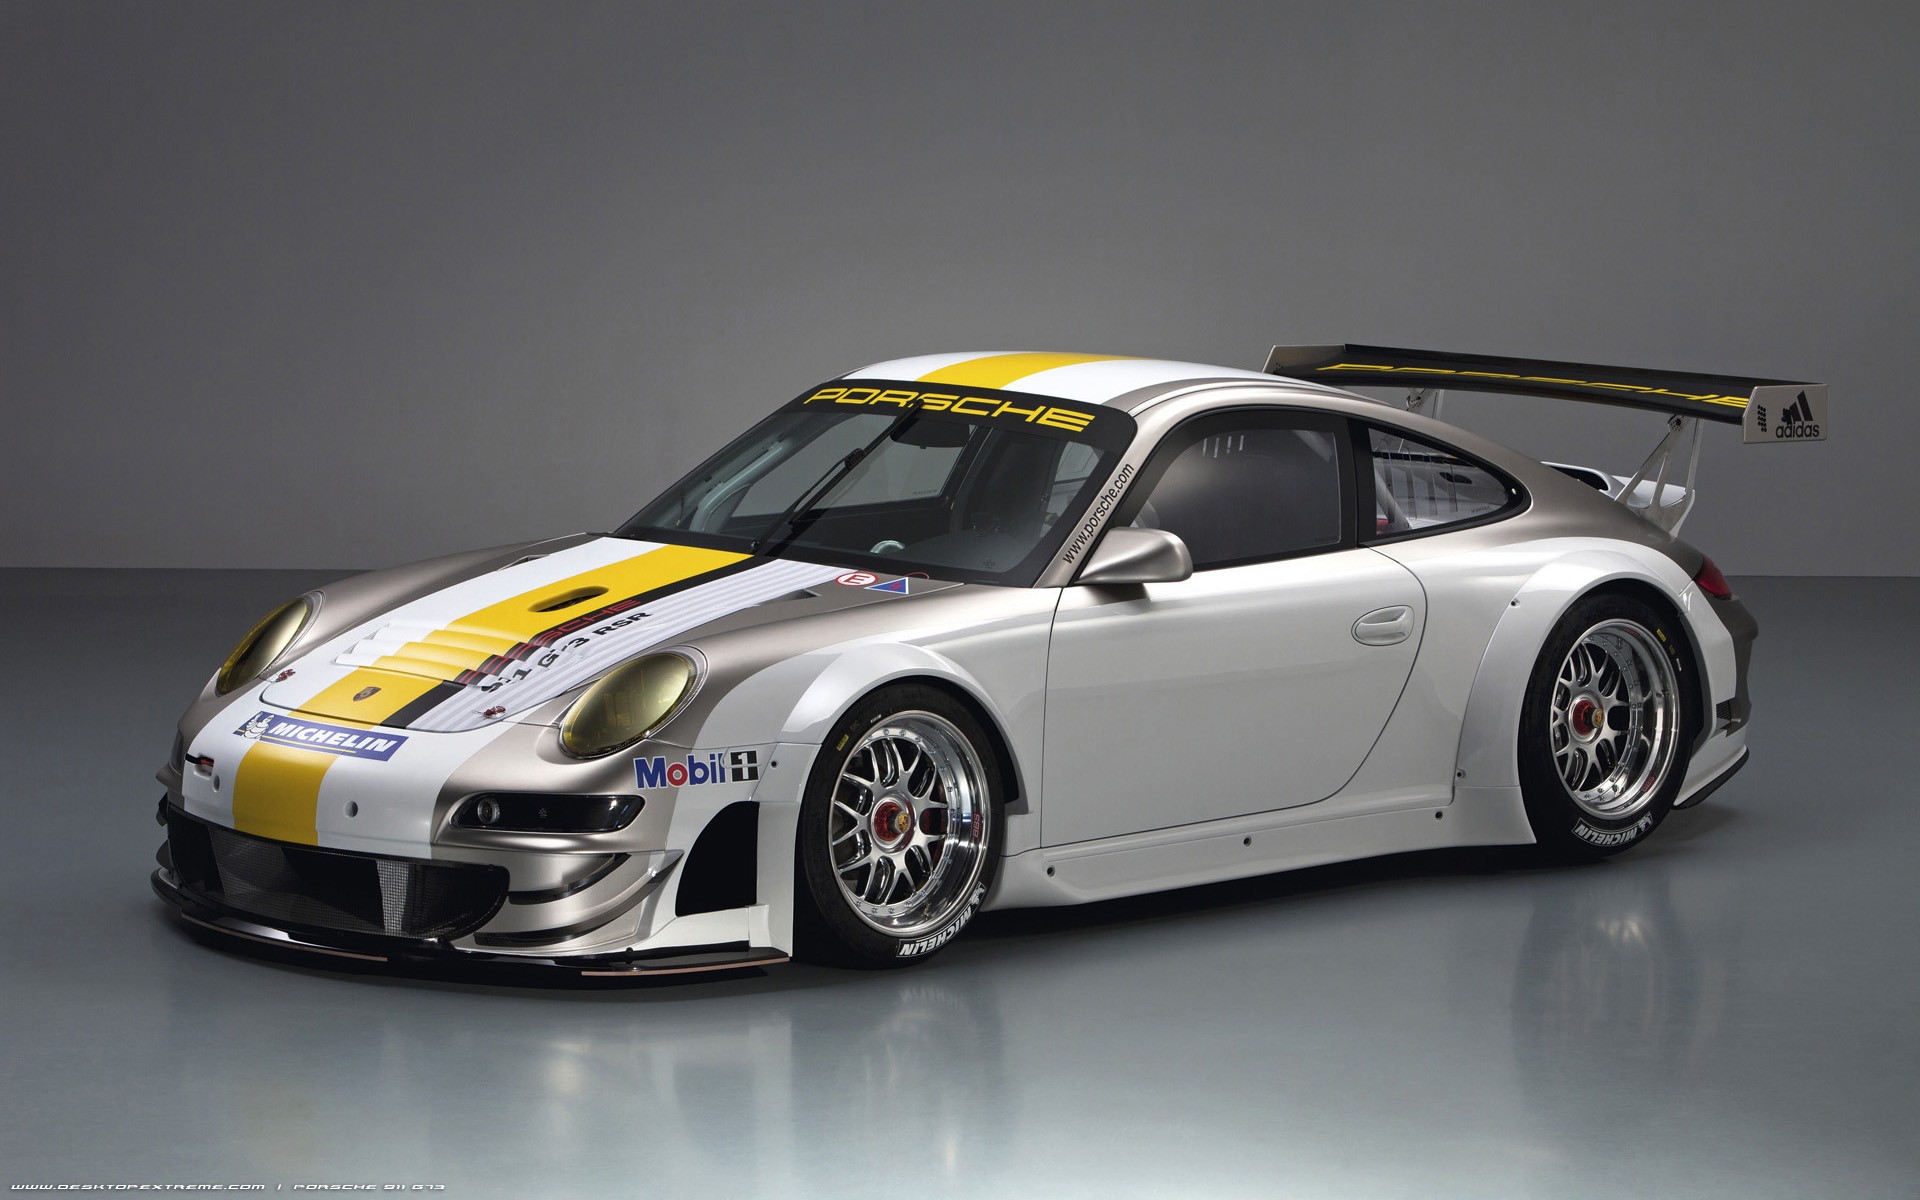 Porsche, cars, racing cars - desktop wallpaper